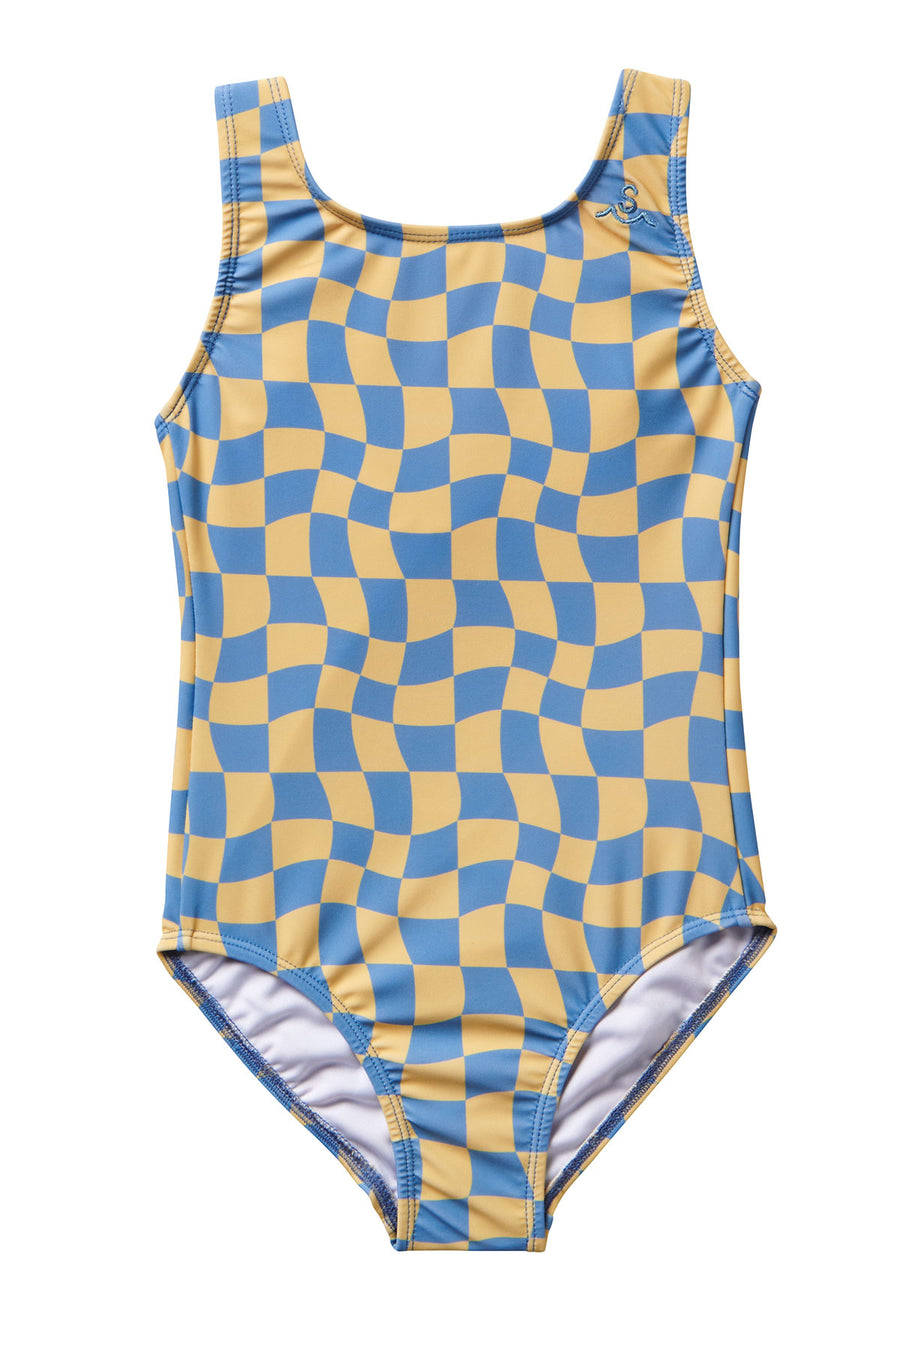 Wavy Checks Swimsuit / Banana